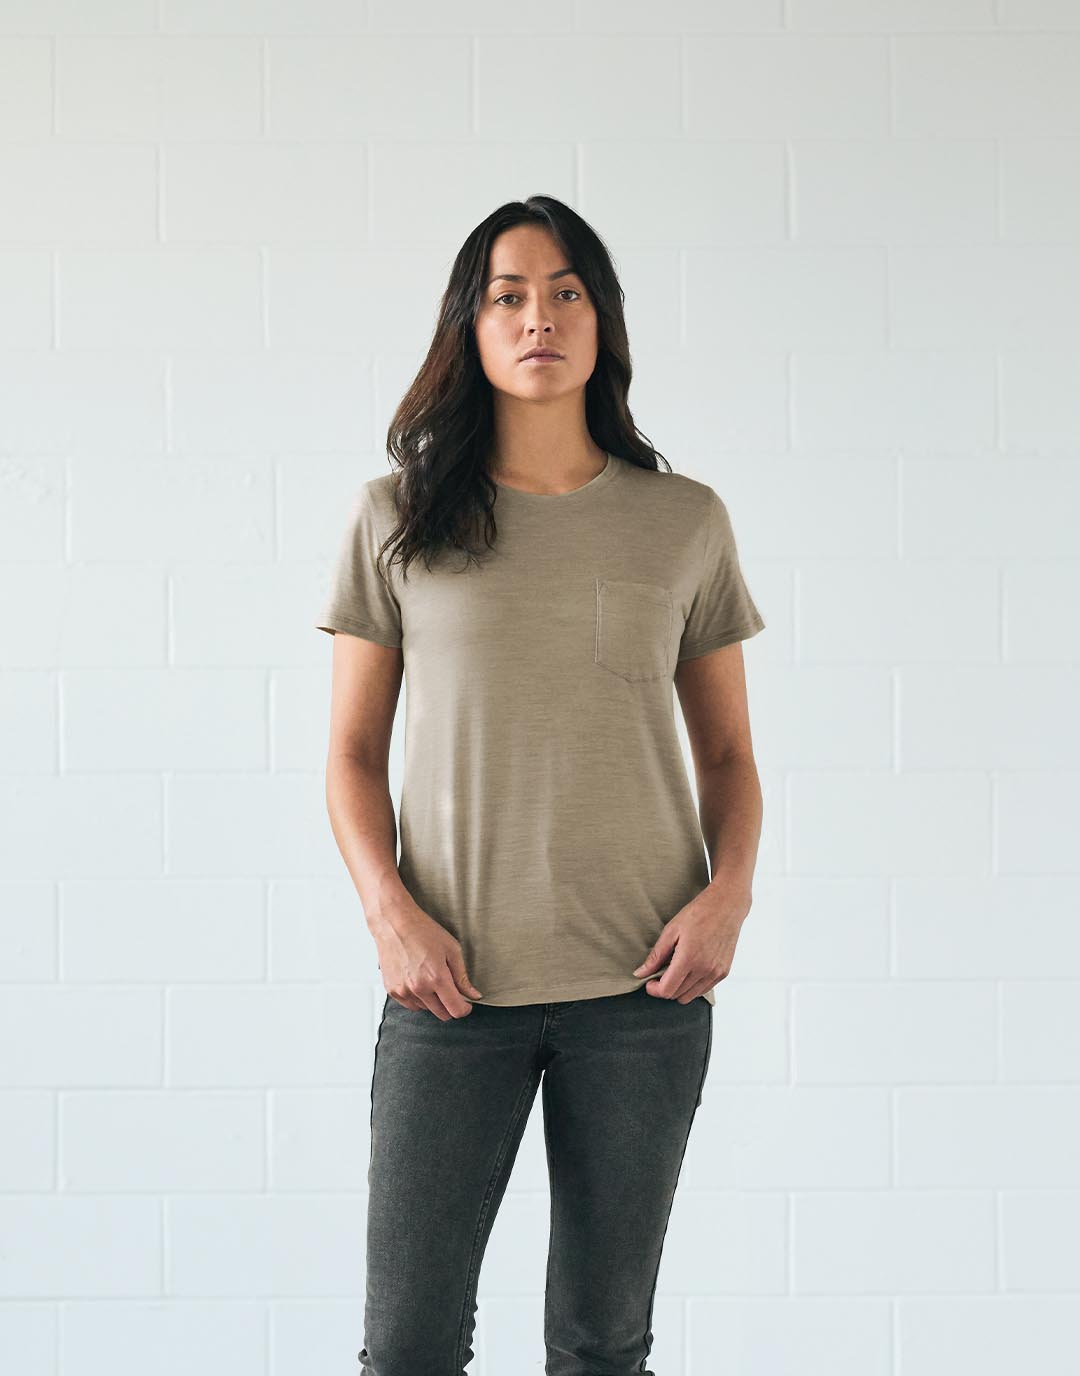 站立的女士身穿采用天然可再生植物色素印染而成的T恤